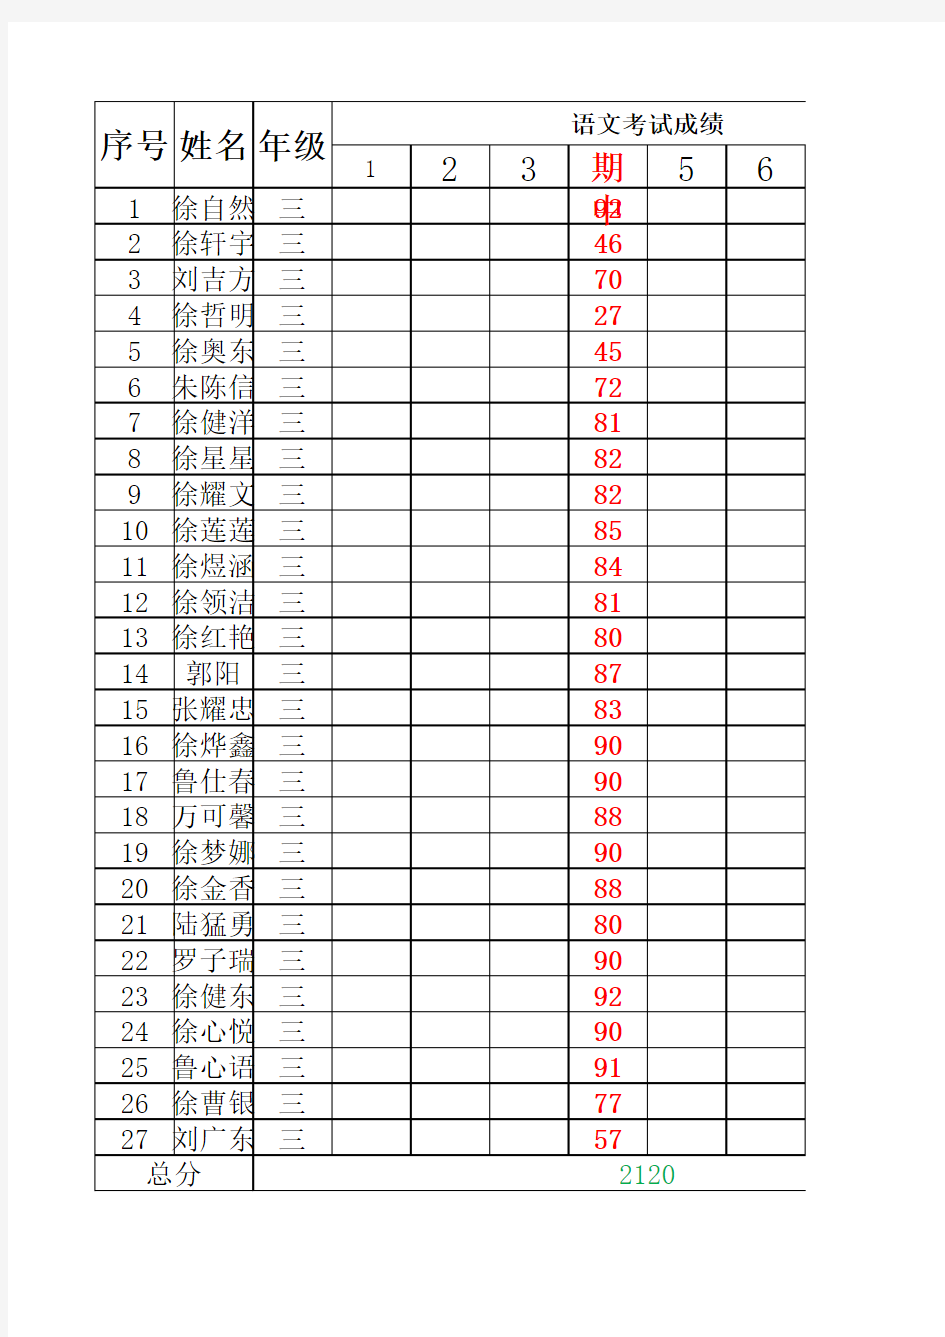 三年级学生成绩登记表